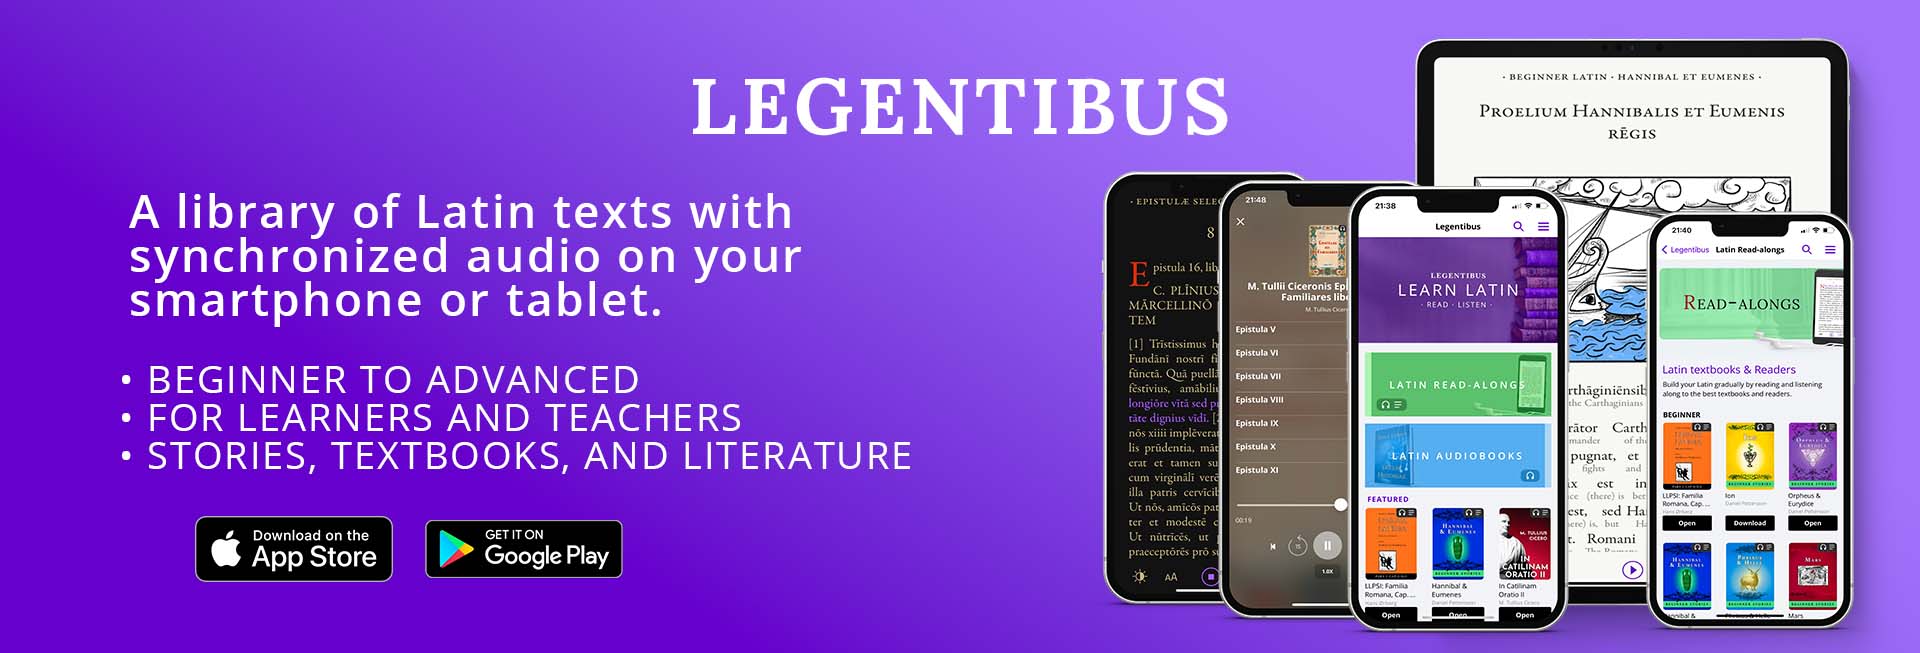 Legentibus-Latin-audiobooks-and-ebooks